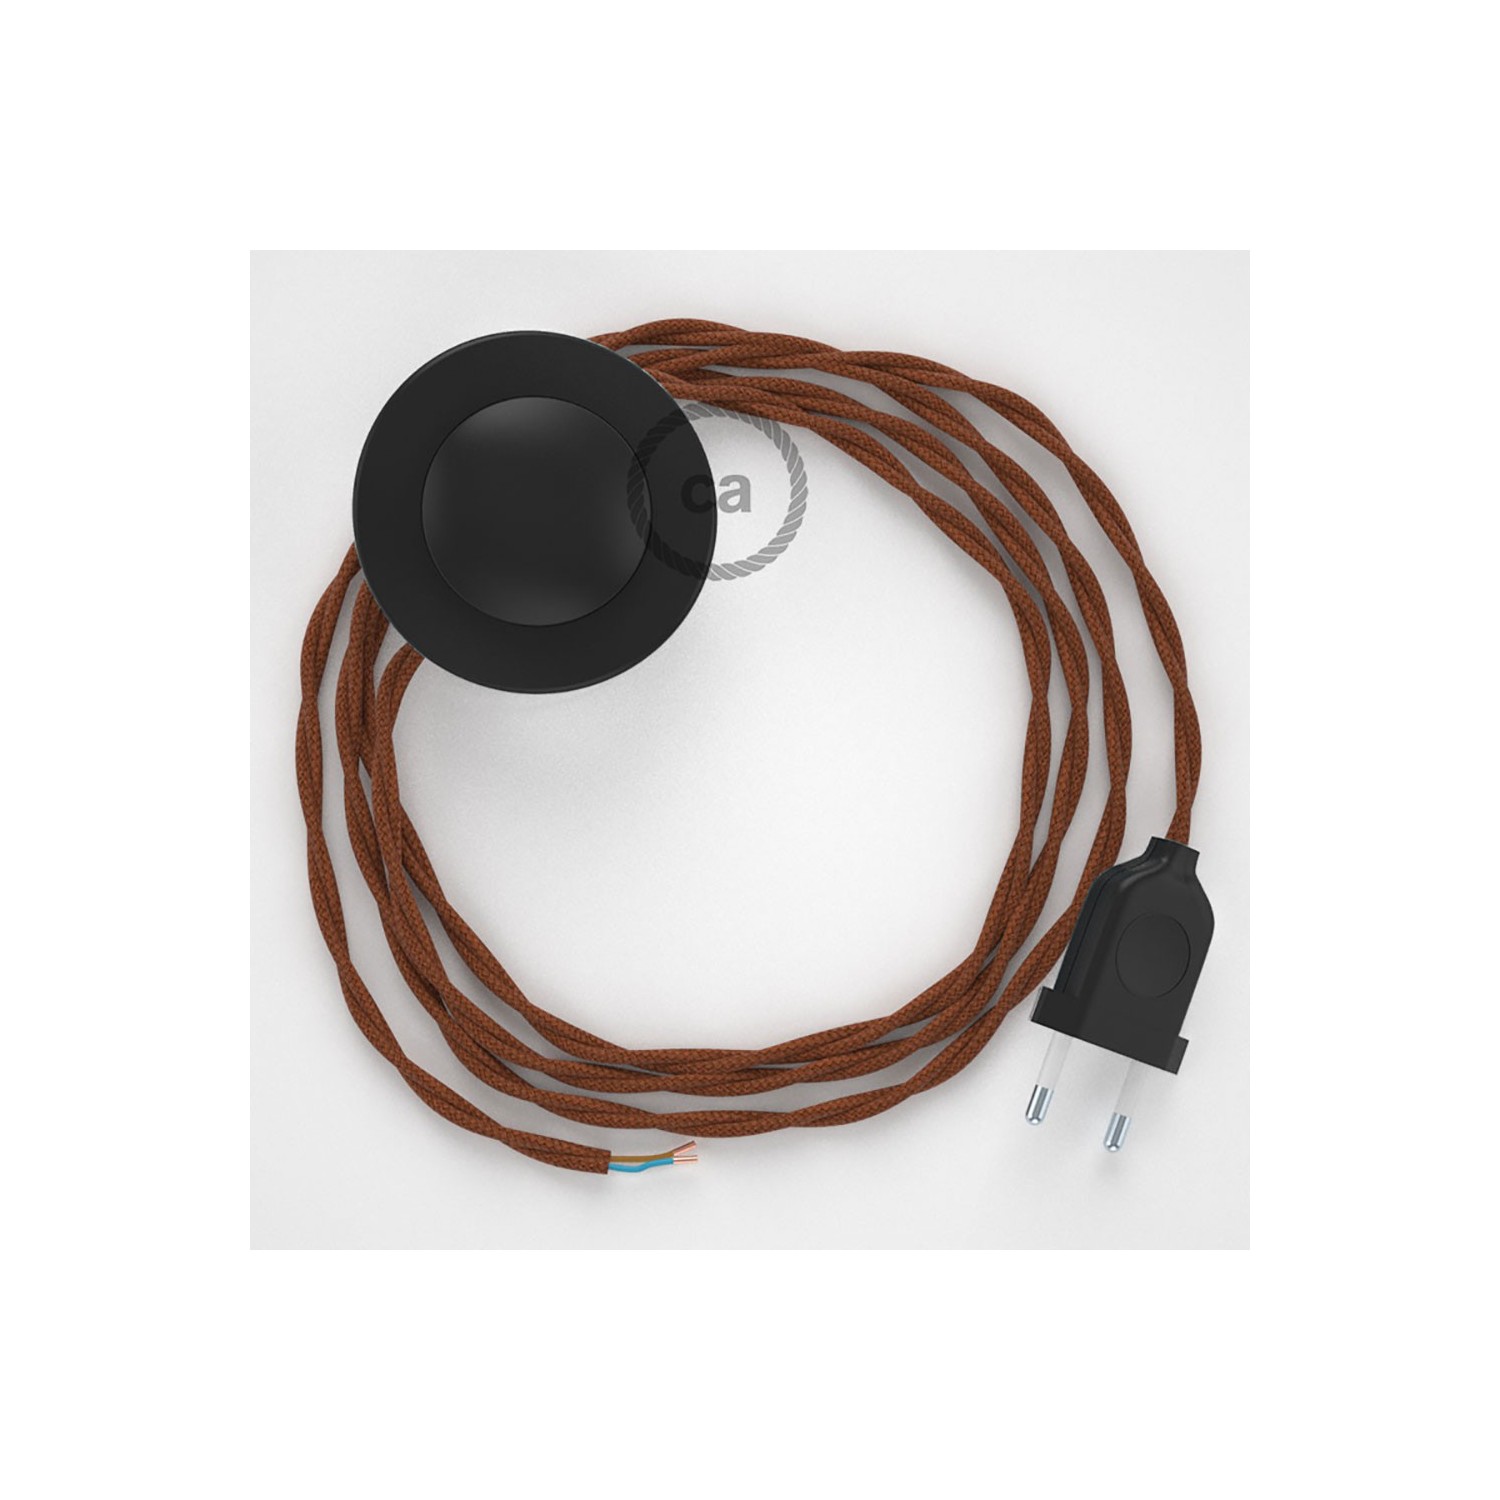 Napajecí kabel pro stojící lampu, TZ22 "jelen" hnědý bavlněný 3 m. Vyberte si barvu vypínače a zástrčky.